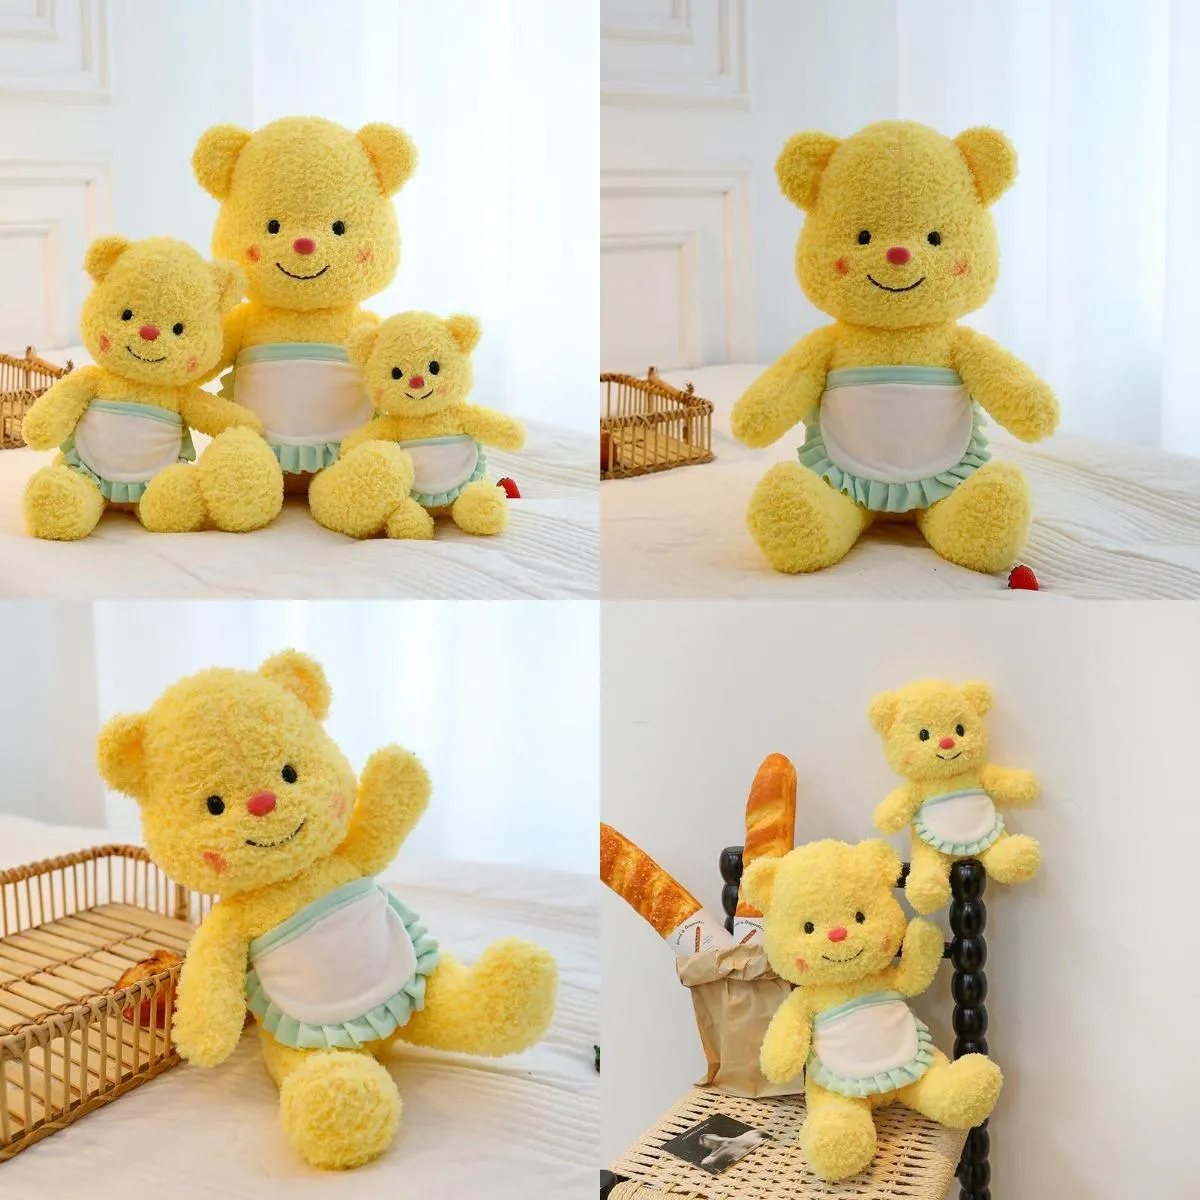 Net rouge nouveau beurre ours en peluche jouet tiktok mignon jouet thaïlande populaire ours populaire poupée pour enfants et filles